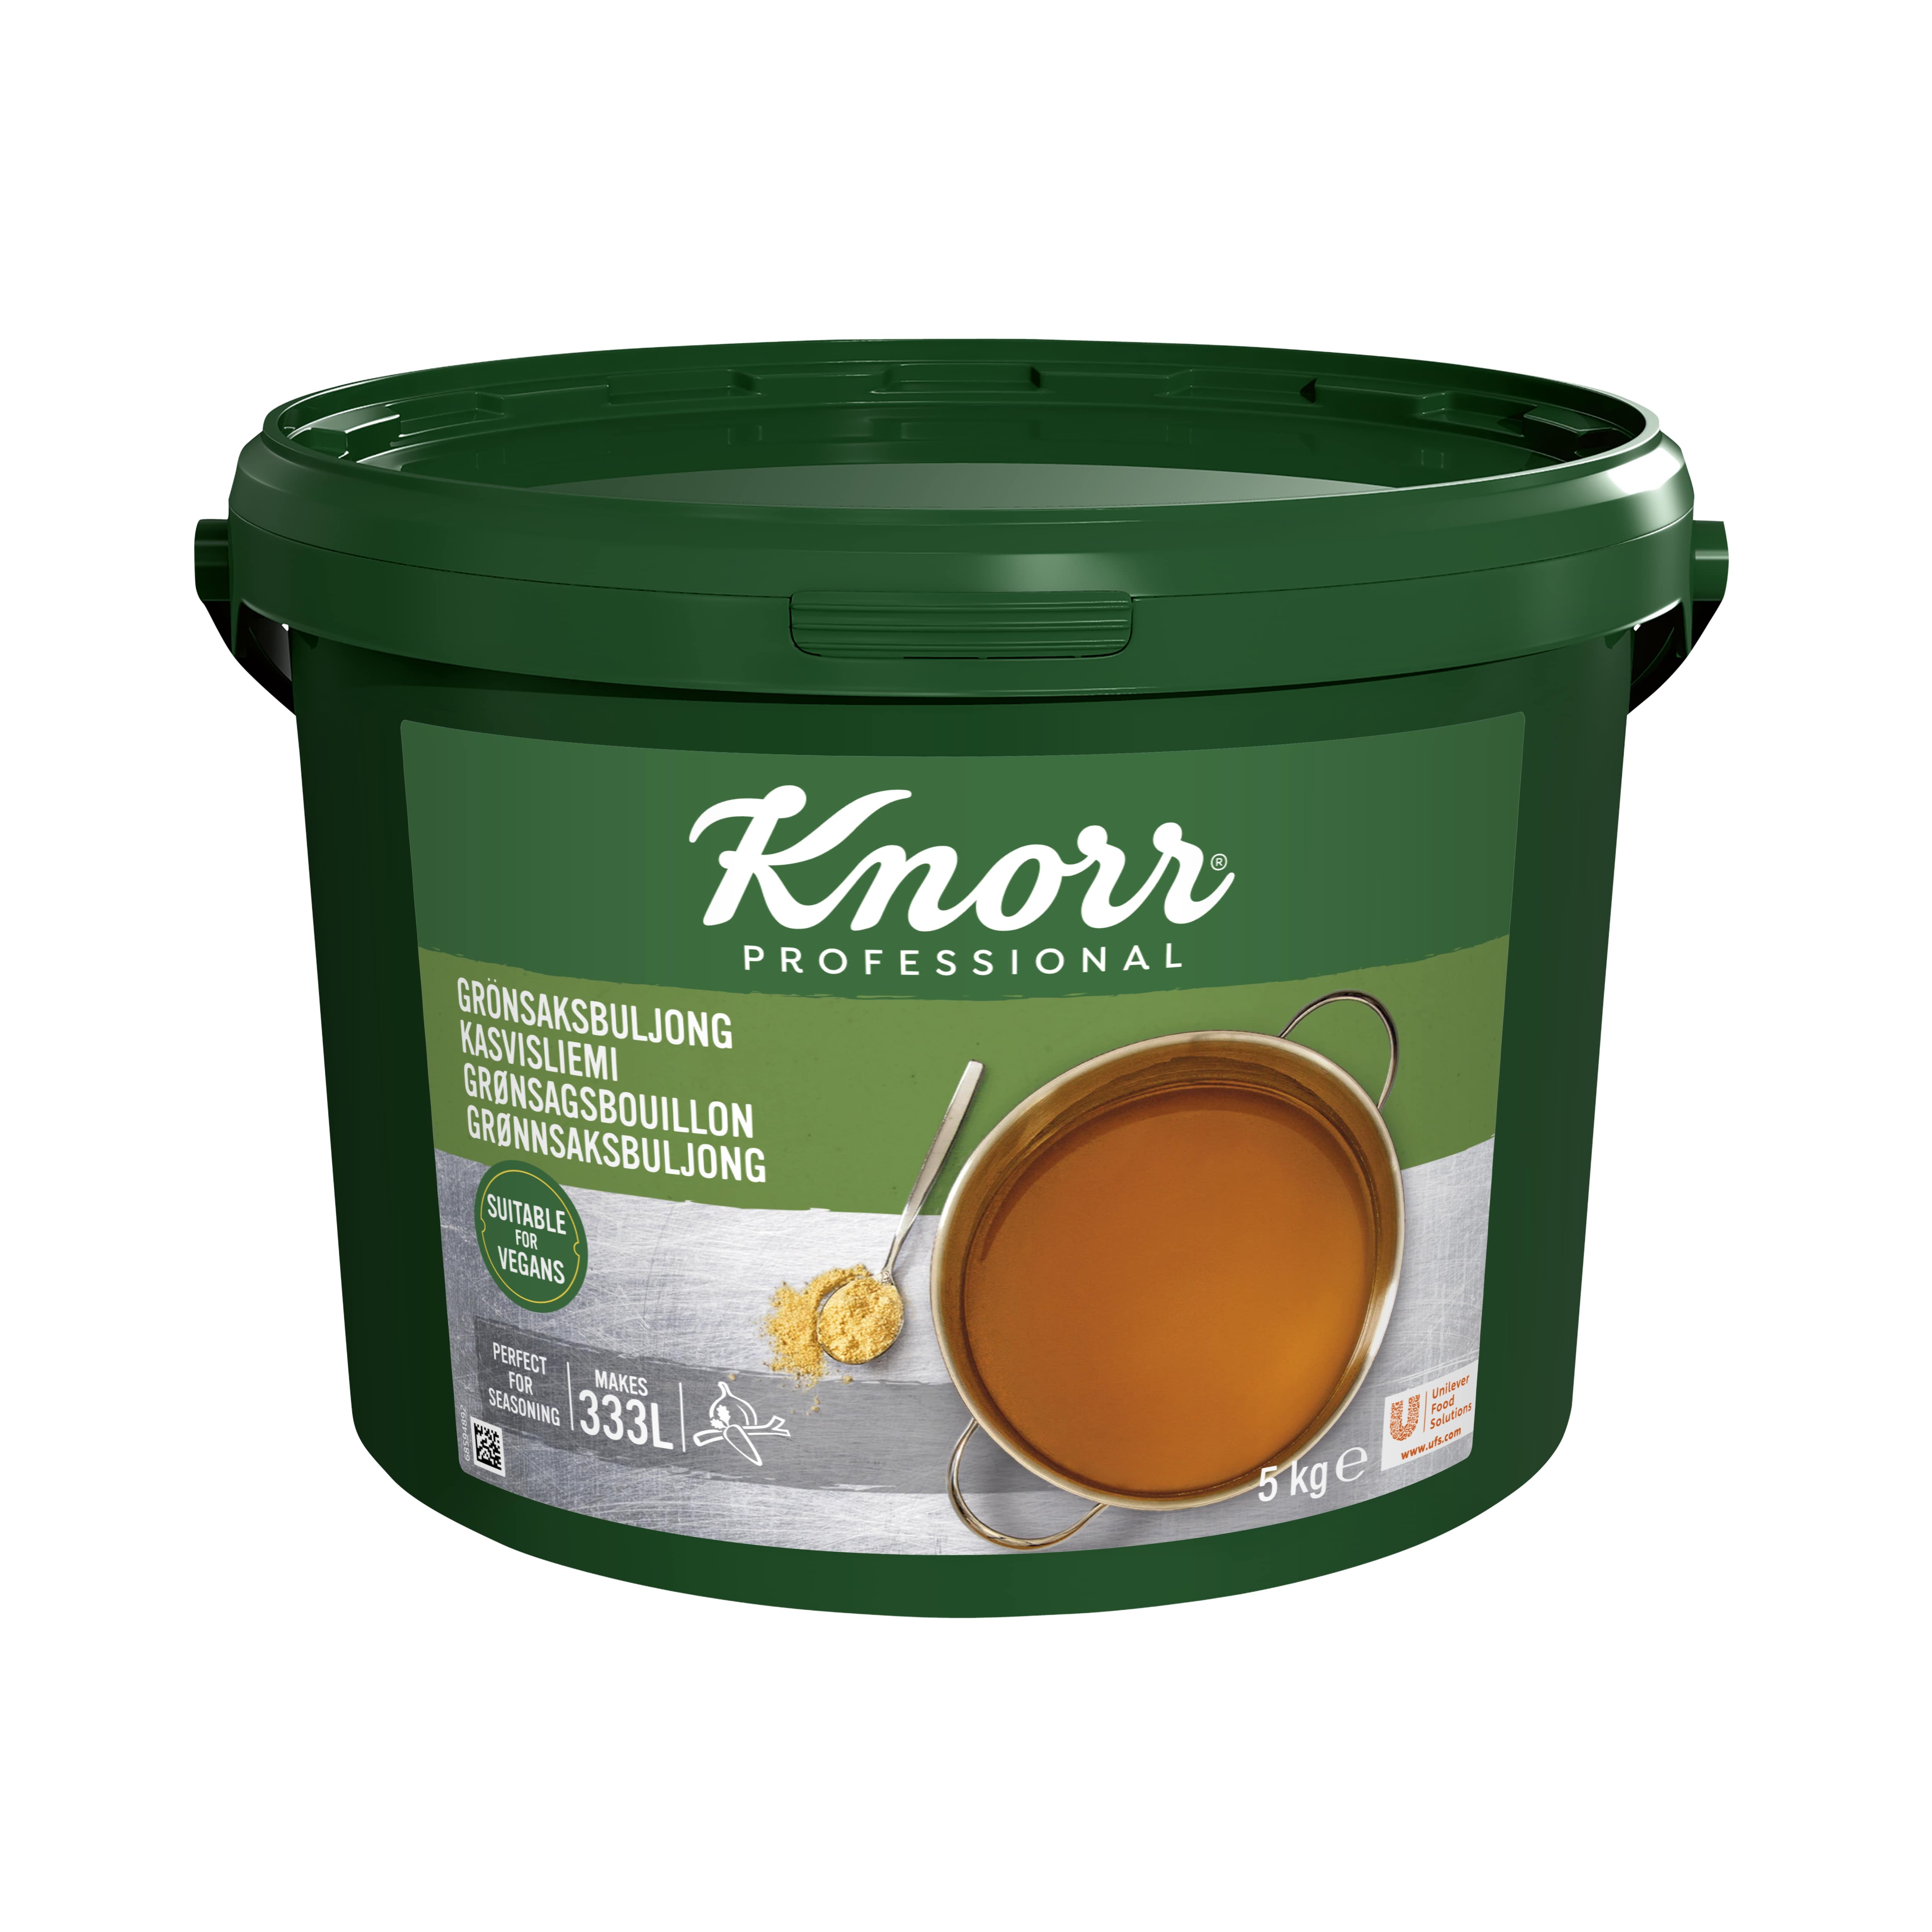 Knorr Kasvisliemi 5 kg / 333L